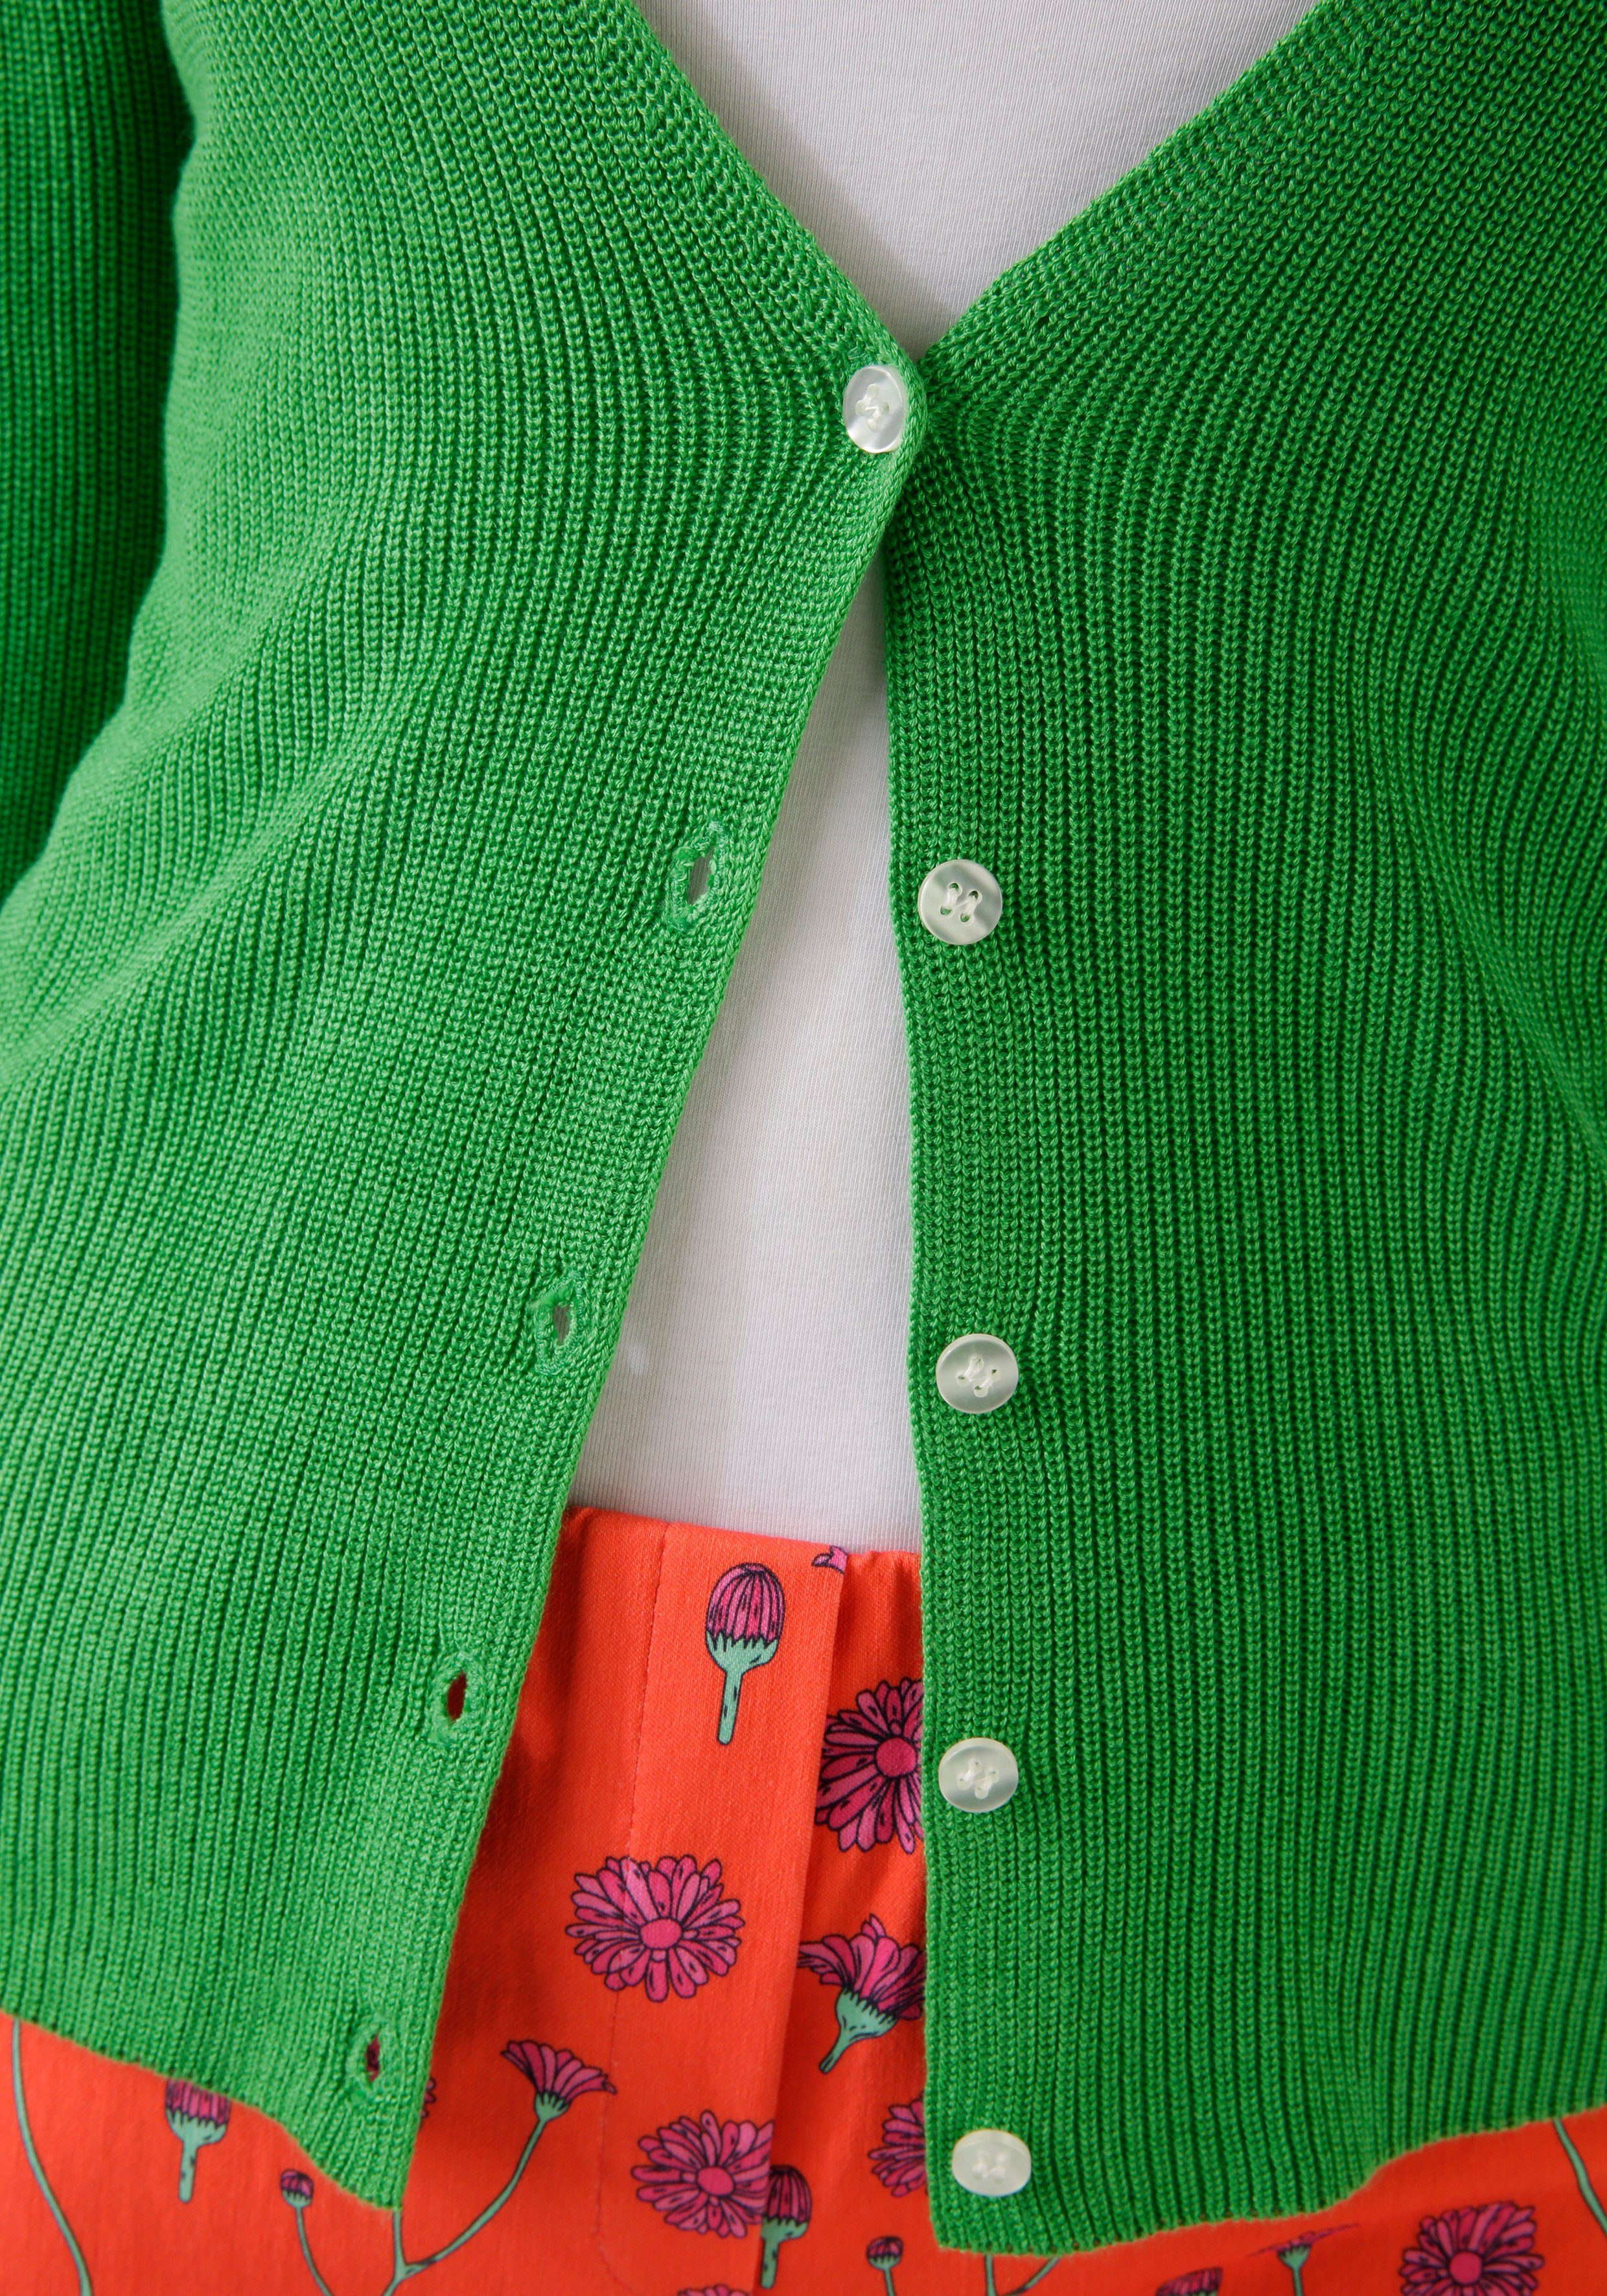 Aniston CASUAL Vest in trendy kleurenpalet nieuwe collectie